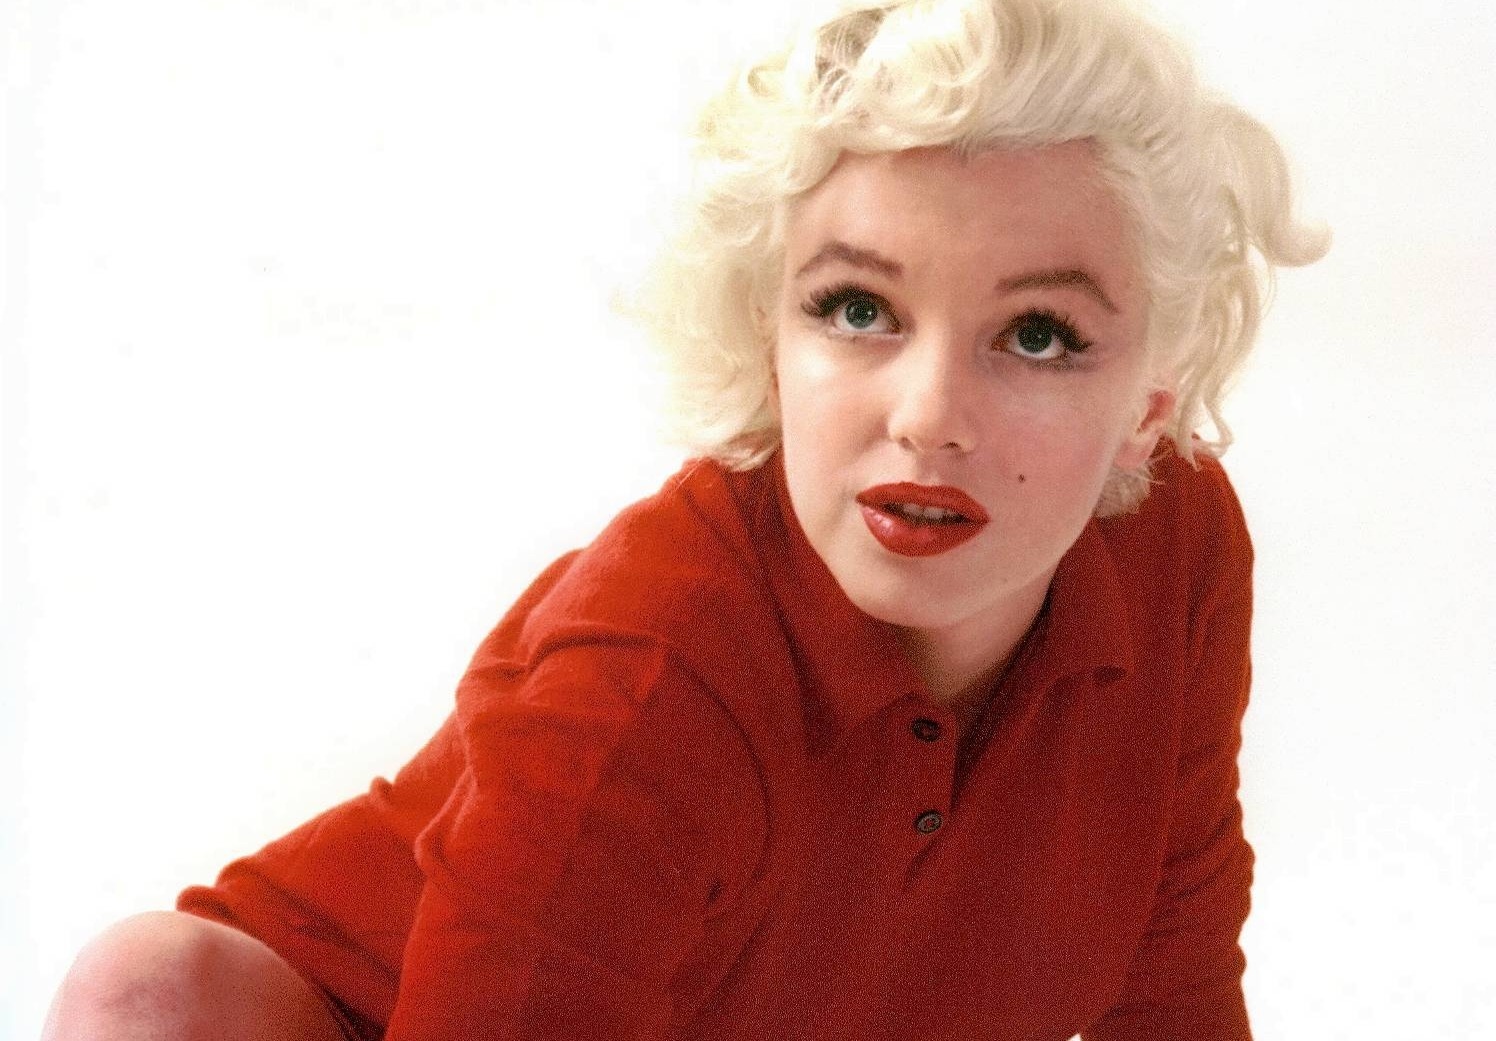 18 Imágenes de Marilyn Monroe, Fotos HD